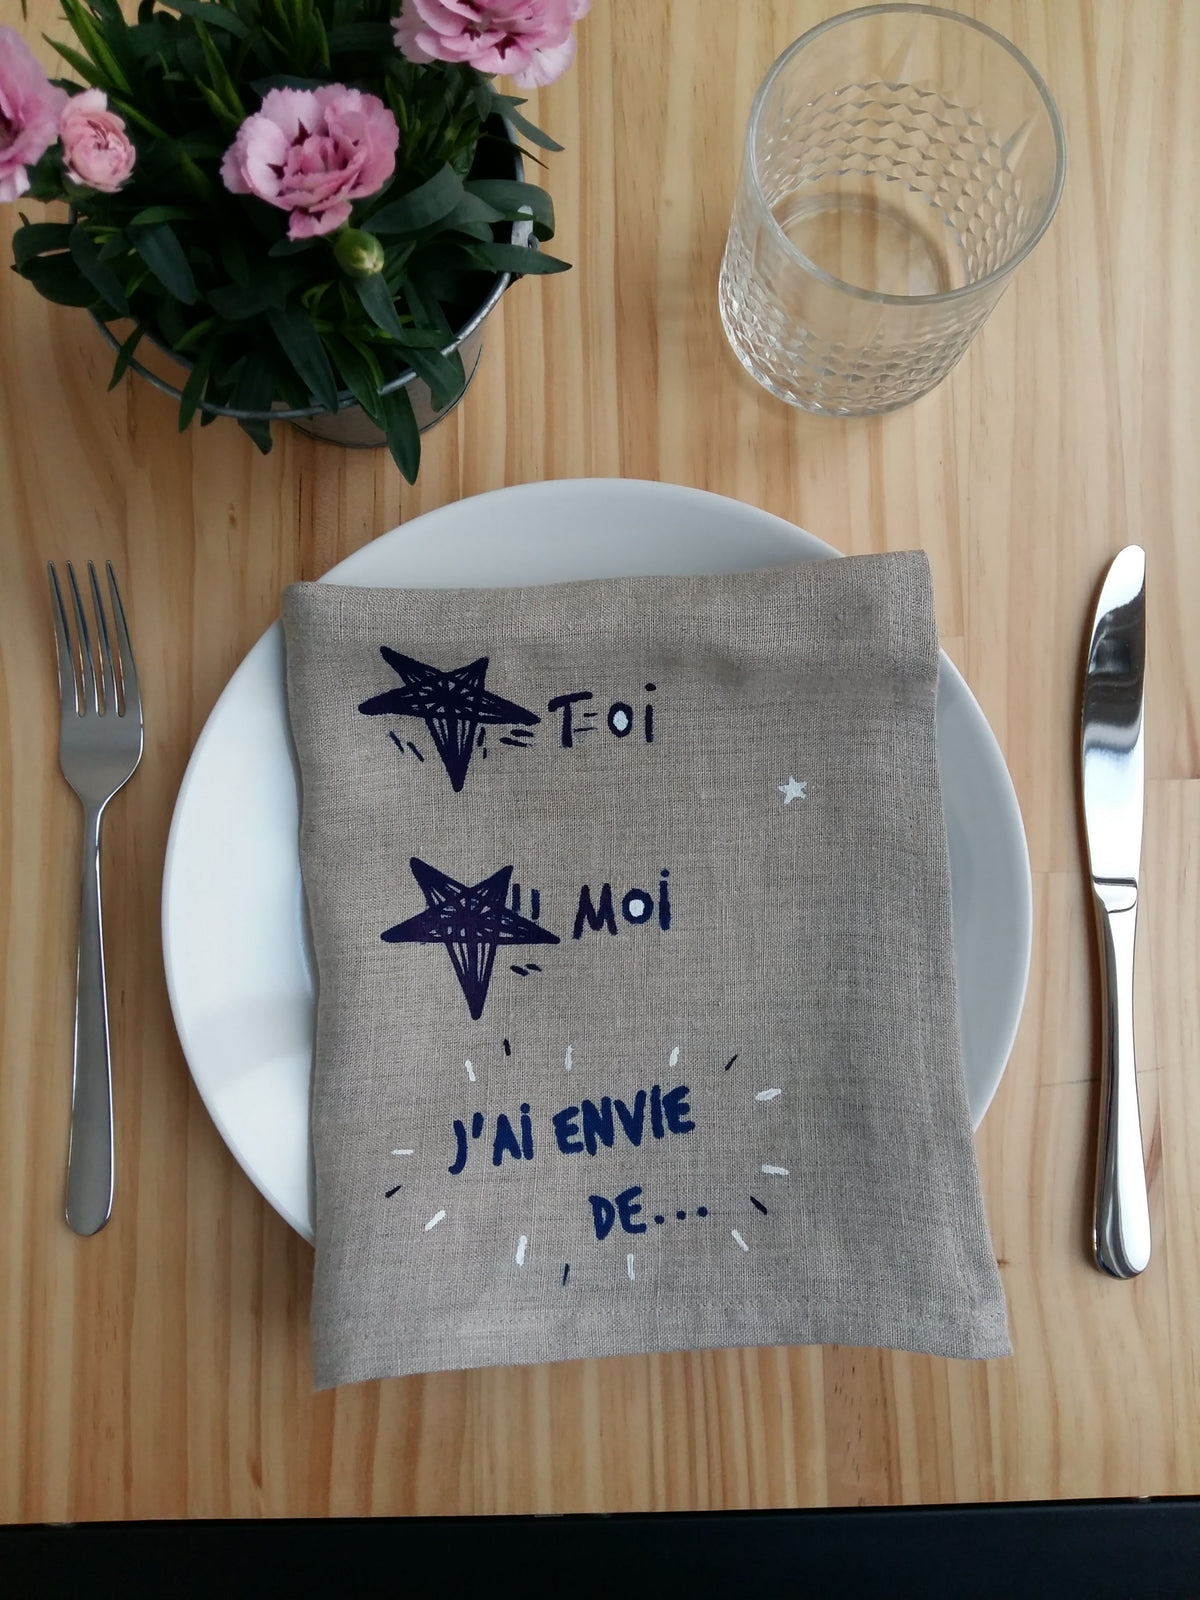 decoration ethique serviette table zero dechet waste tissu textile lin made in France serigraphie environnement Francais renaissance creation mode éthique